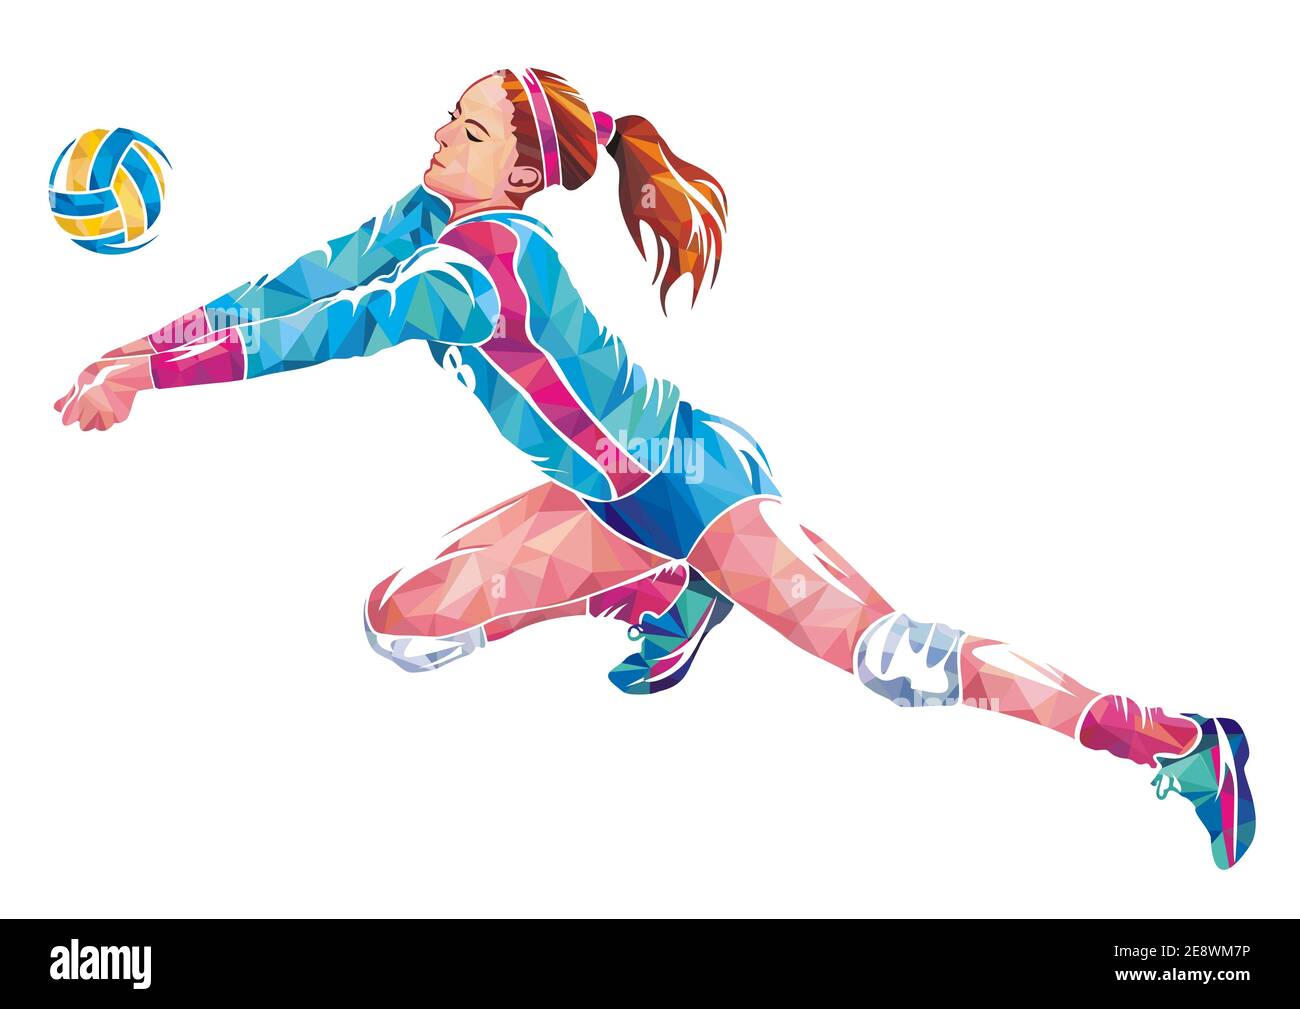 Femme joueur de volley-ball en action Illustration du concept géométrique coloré isolée Banque D'Images